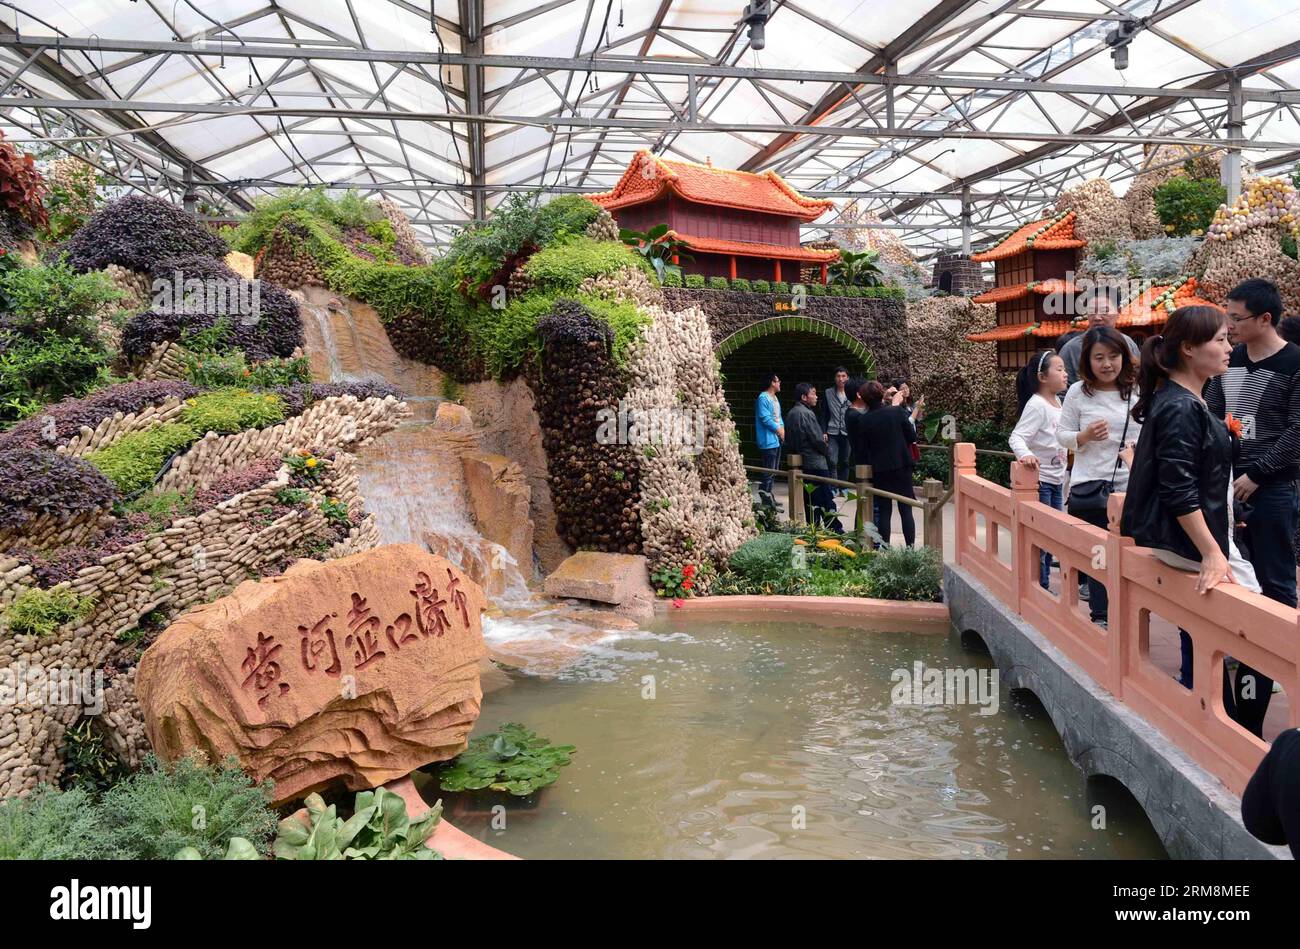 (140420) -- SHOUGUANG, 20 aprile 2014 (Xinhua) -- le persone camminano davanti a un paesaggio in miniatura fatto di verdure durante la 15a fiera internazionale della Cina (Shouguang) a Shouguang, nella provincia di Shandong della Cina orientale, 20 aprile 2014. La fiera annuale è iniziata a Shouguang, il più grande fornitore di verdure di Pechino, capitale della Cina, domenica. La fiera, che ha attirato espositori da oltre 20 paesi e regioni, durerà fino a maggio 30. (Xinhua/Zhu Zheng) (wjq) CHINA-SHANDONG-SHOUGUANG-VEGETERY FAIR (CN) PUBLICATIONxNOTxINxCHN Shouguang 20 aprile 2014 le celebrità di XINHUA camminano davanti a M Foto Stock